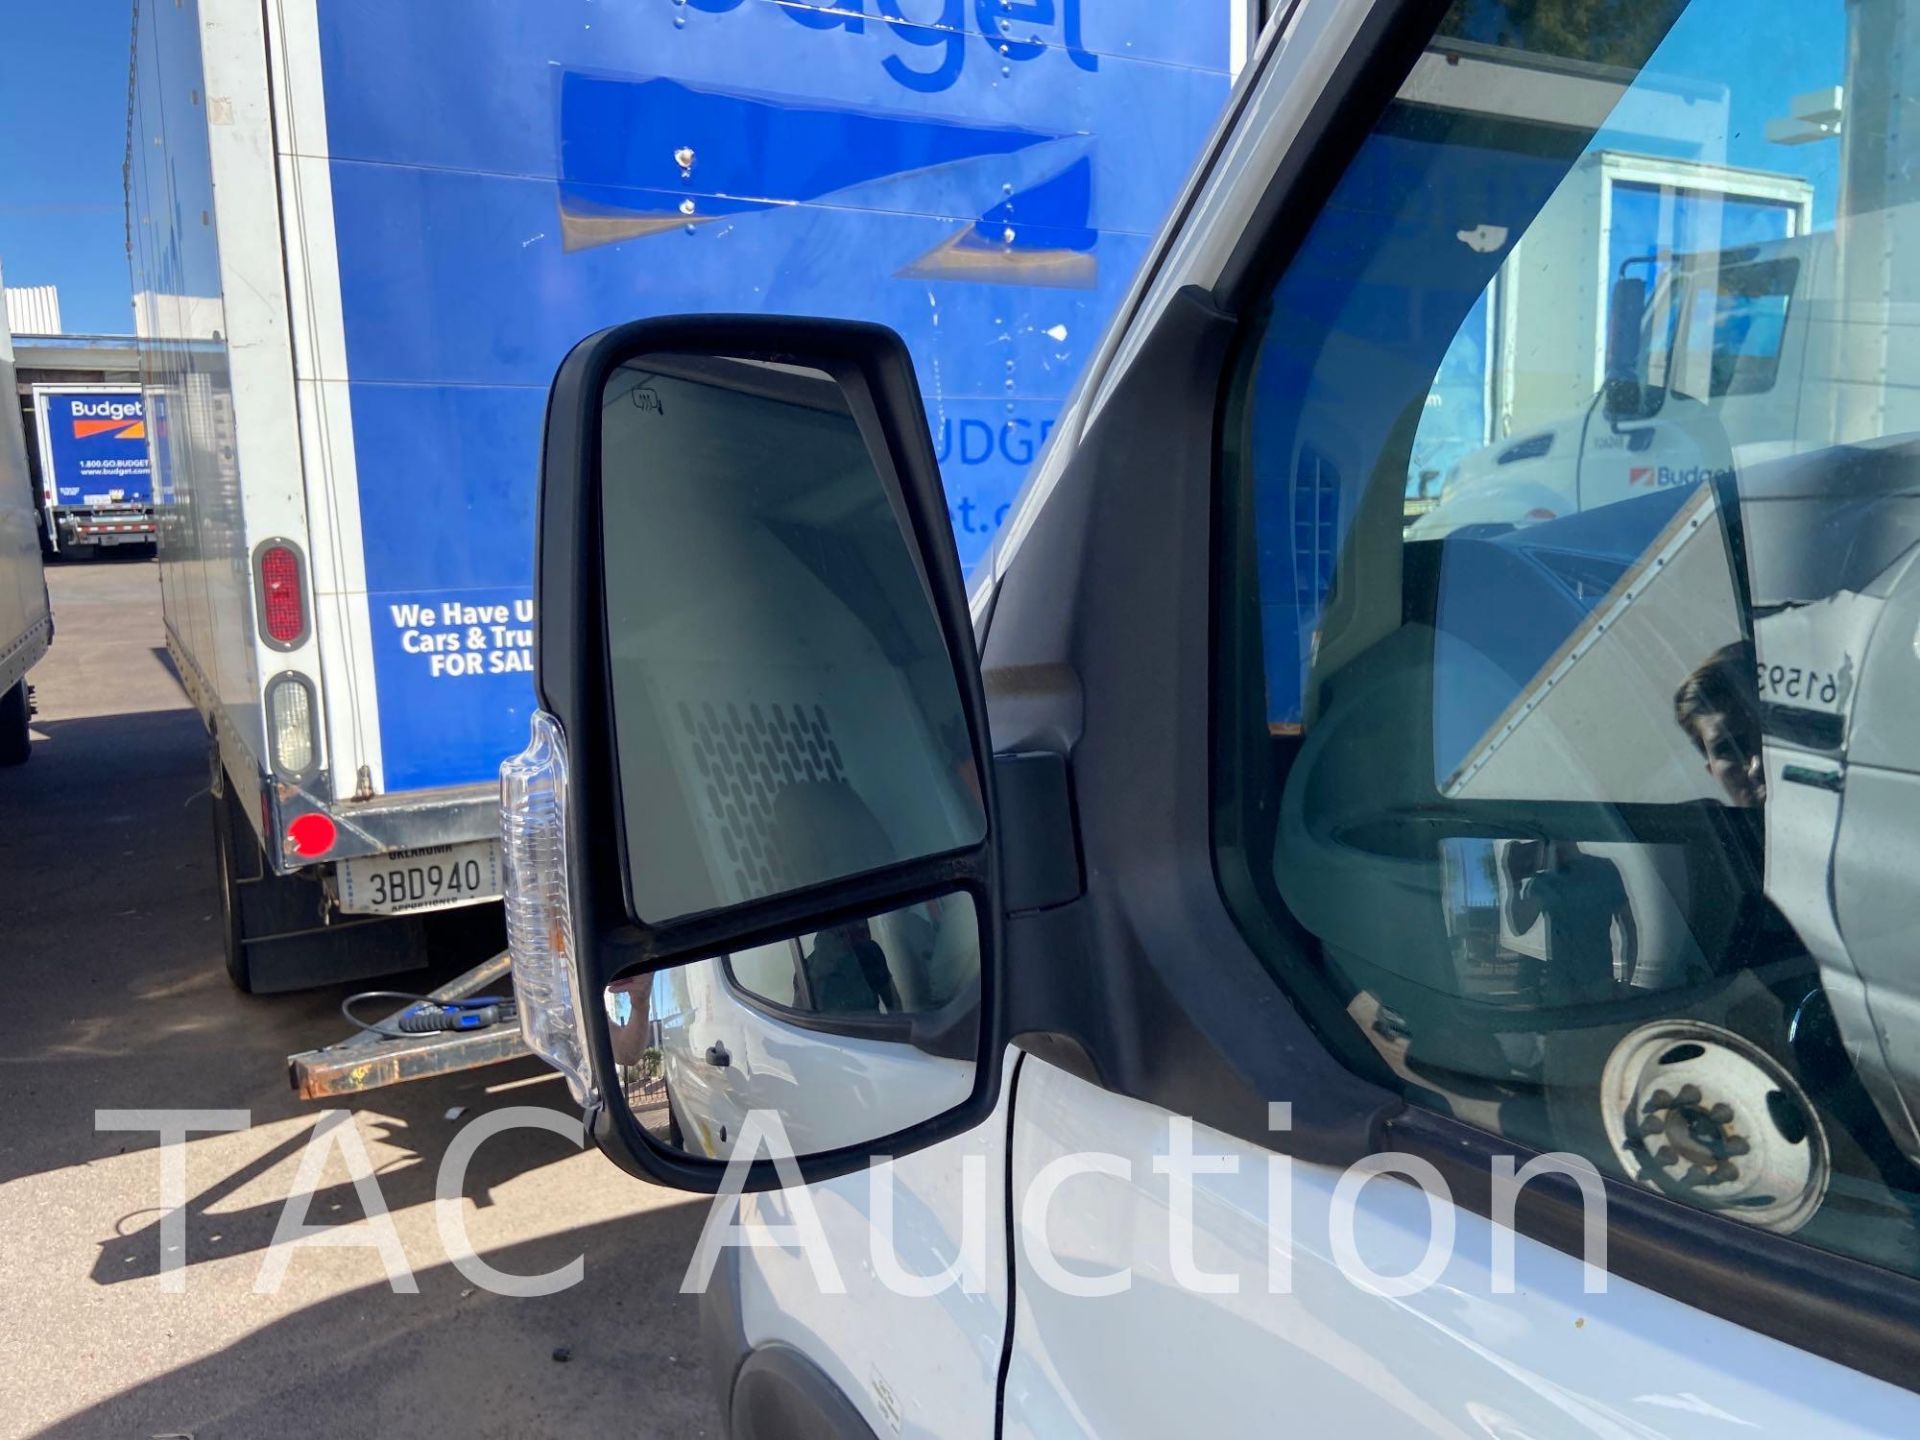 2019 Ford Transit 150 Cargo Van - Image 11 of 81